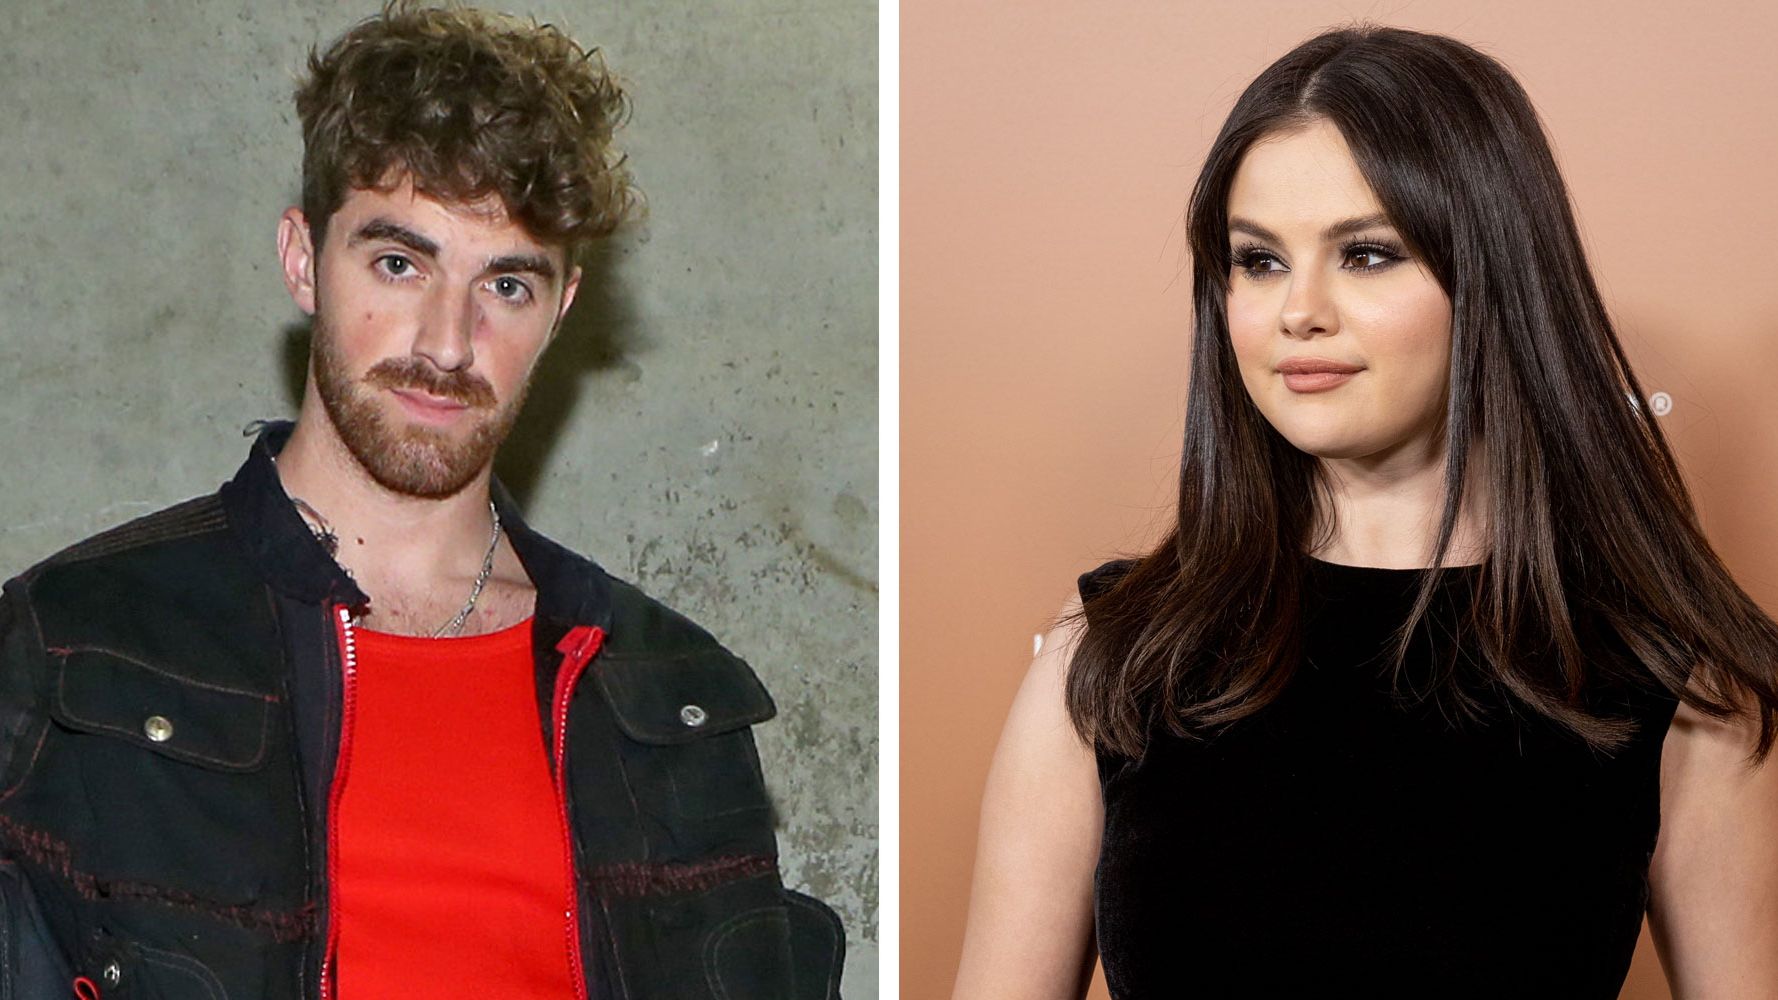 Who Is Drew Taggart? - Meet Selena Gomez's New Boyfriend